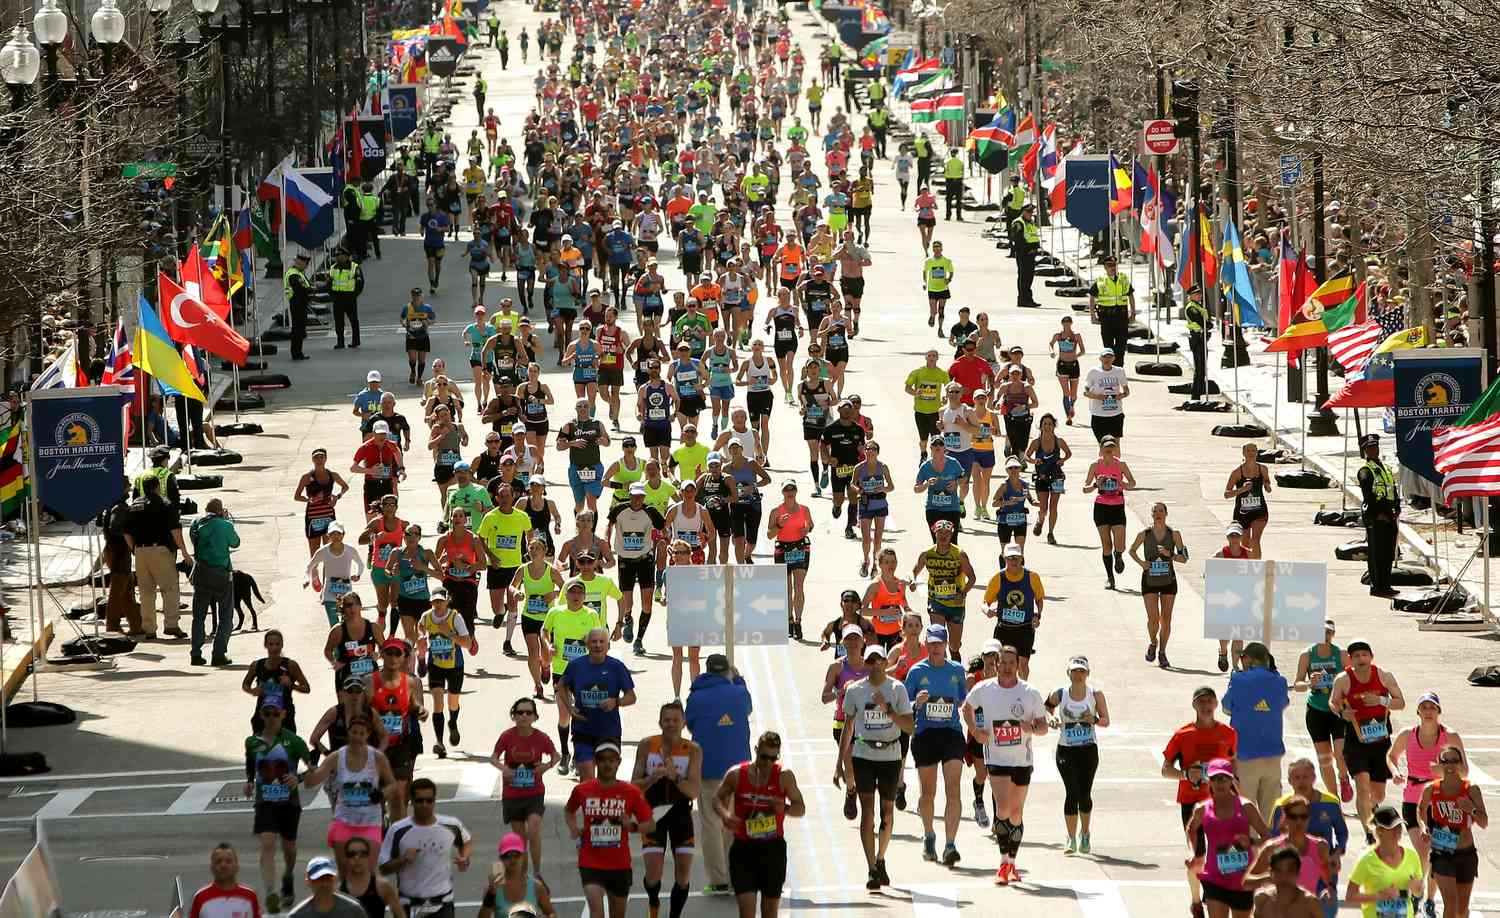 Hardlopers in de buurt van de finishlijn op Boylston Street tijdens de 120e Boston Marathon op 18 april 2016 in Boston, Massachusetts